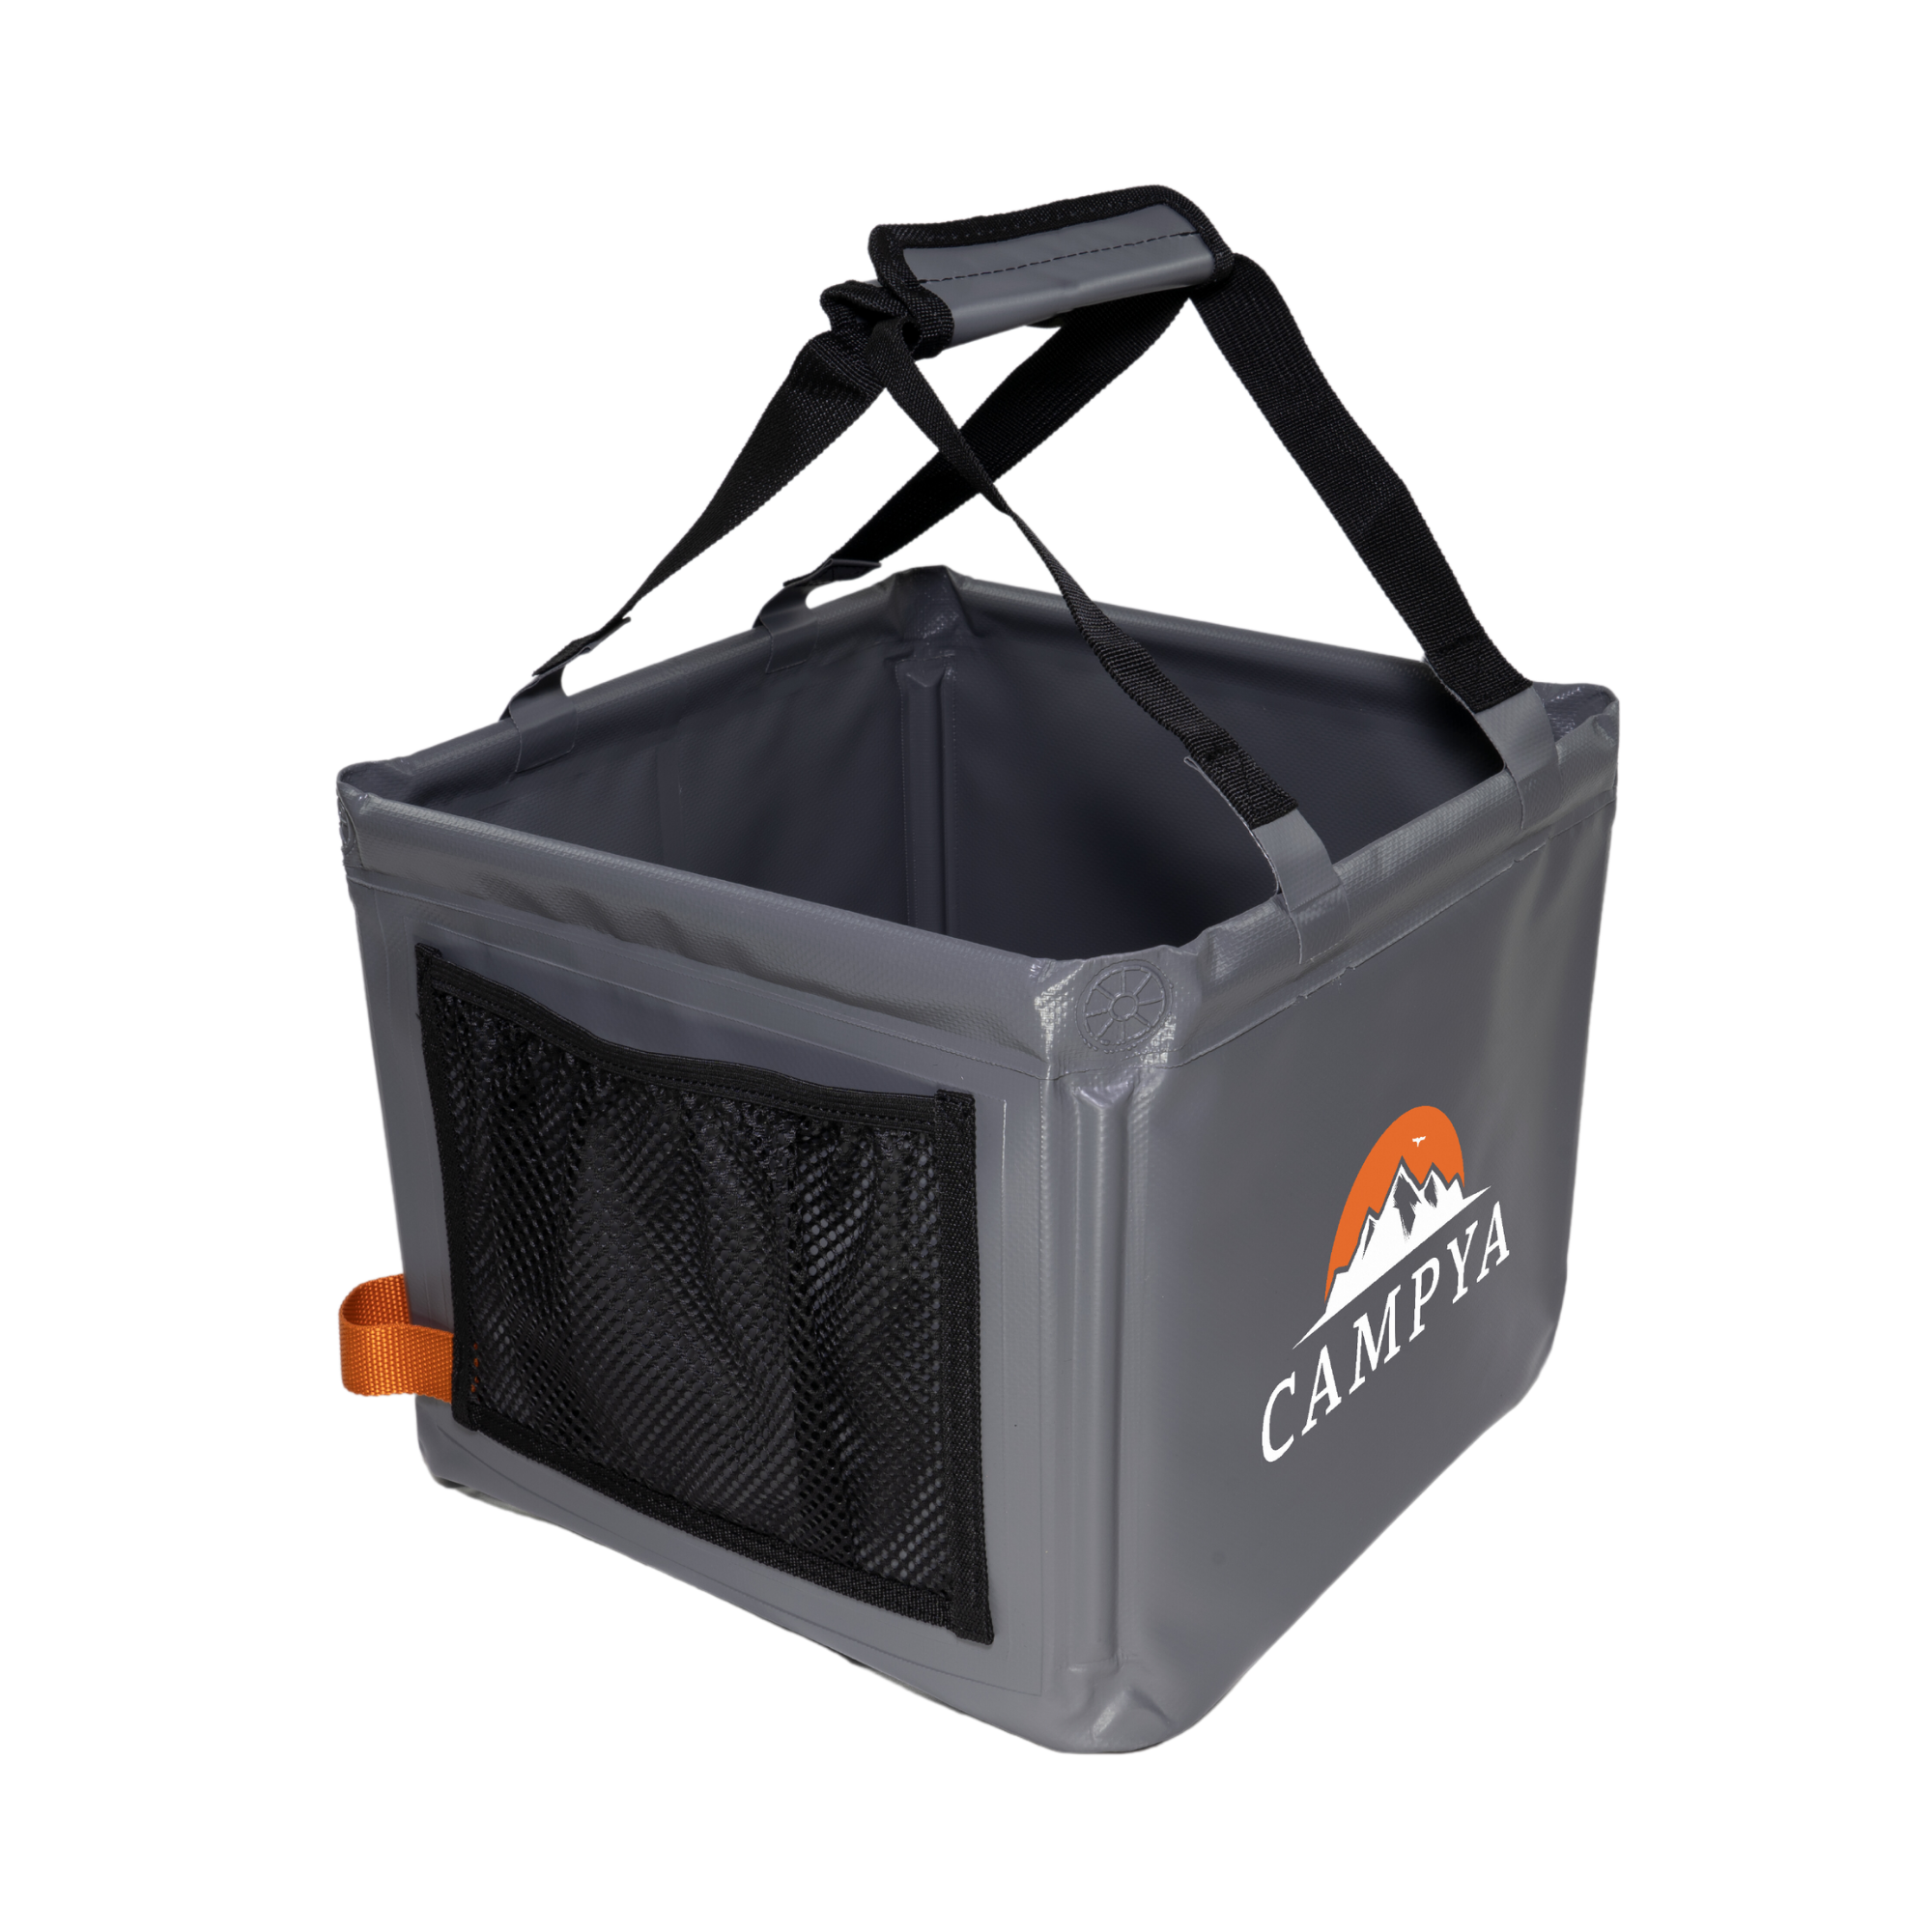 Faltschüssel Spülschüssel Waschschüssel XL 37cm Faltbare Camping Silikon  Dunlop